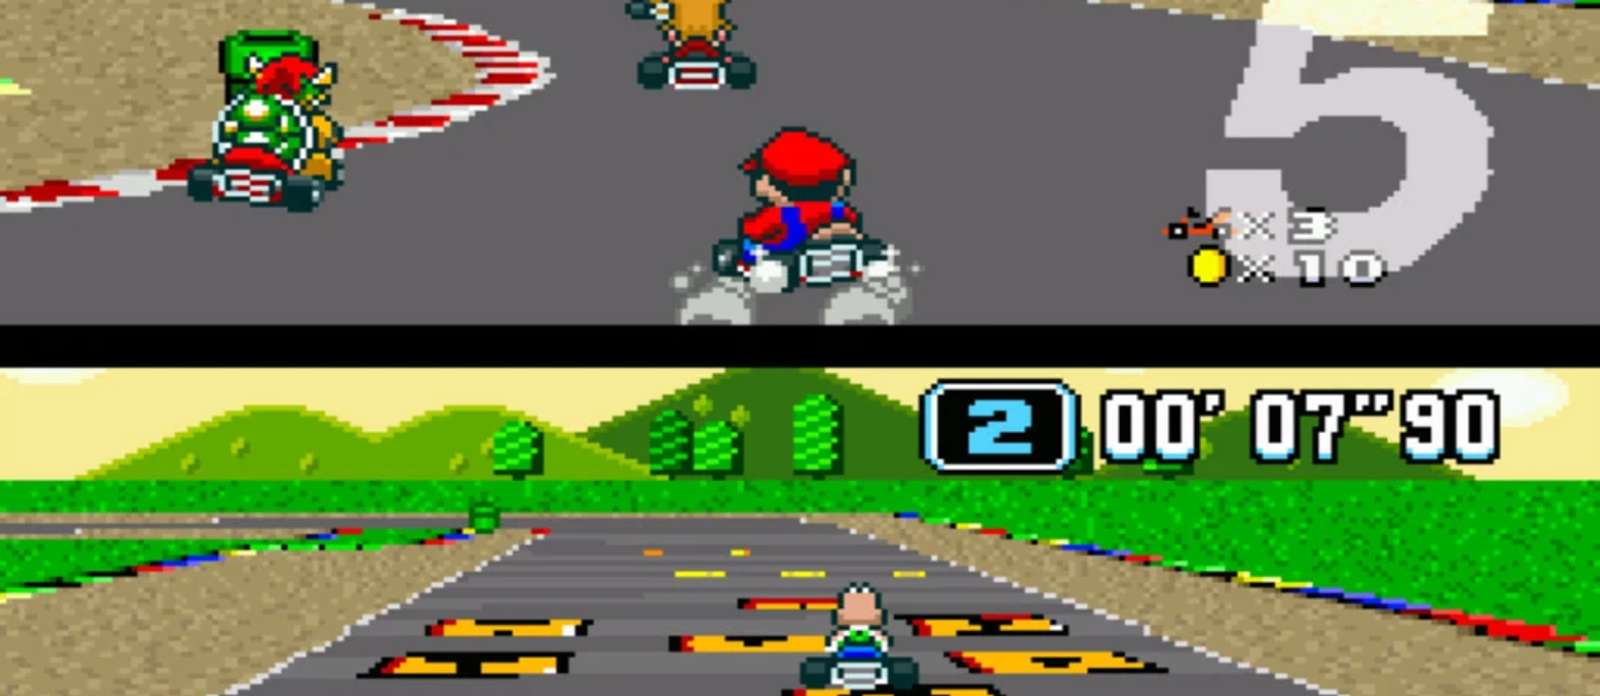 Večer retro igranja: Super Mario Kart